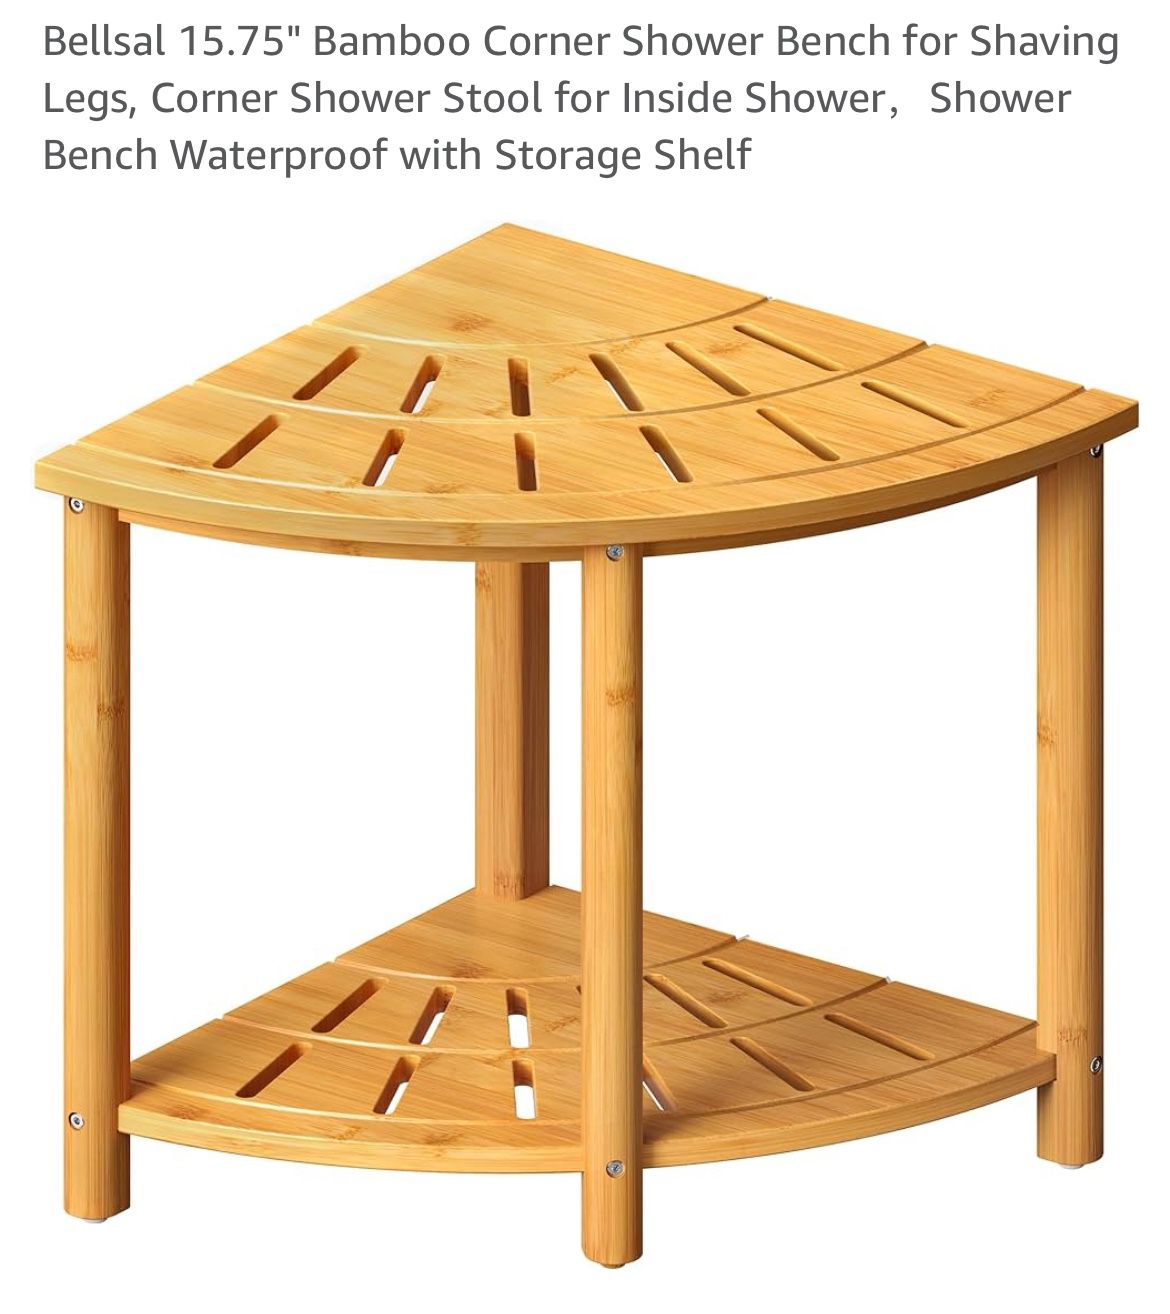 Bellsal Bamboo Shower Bench